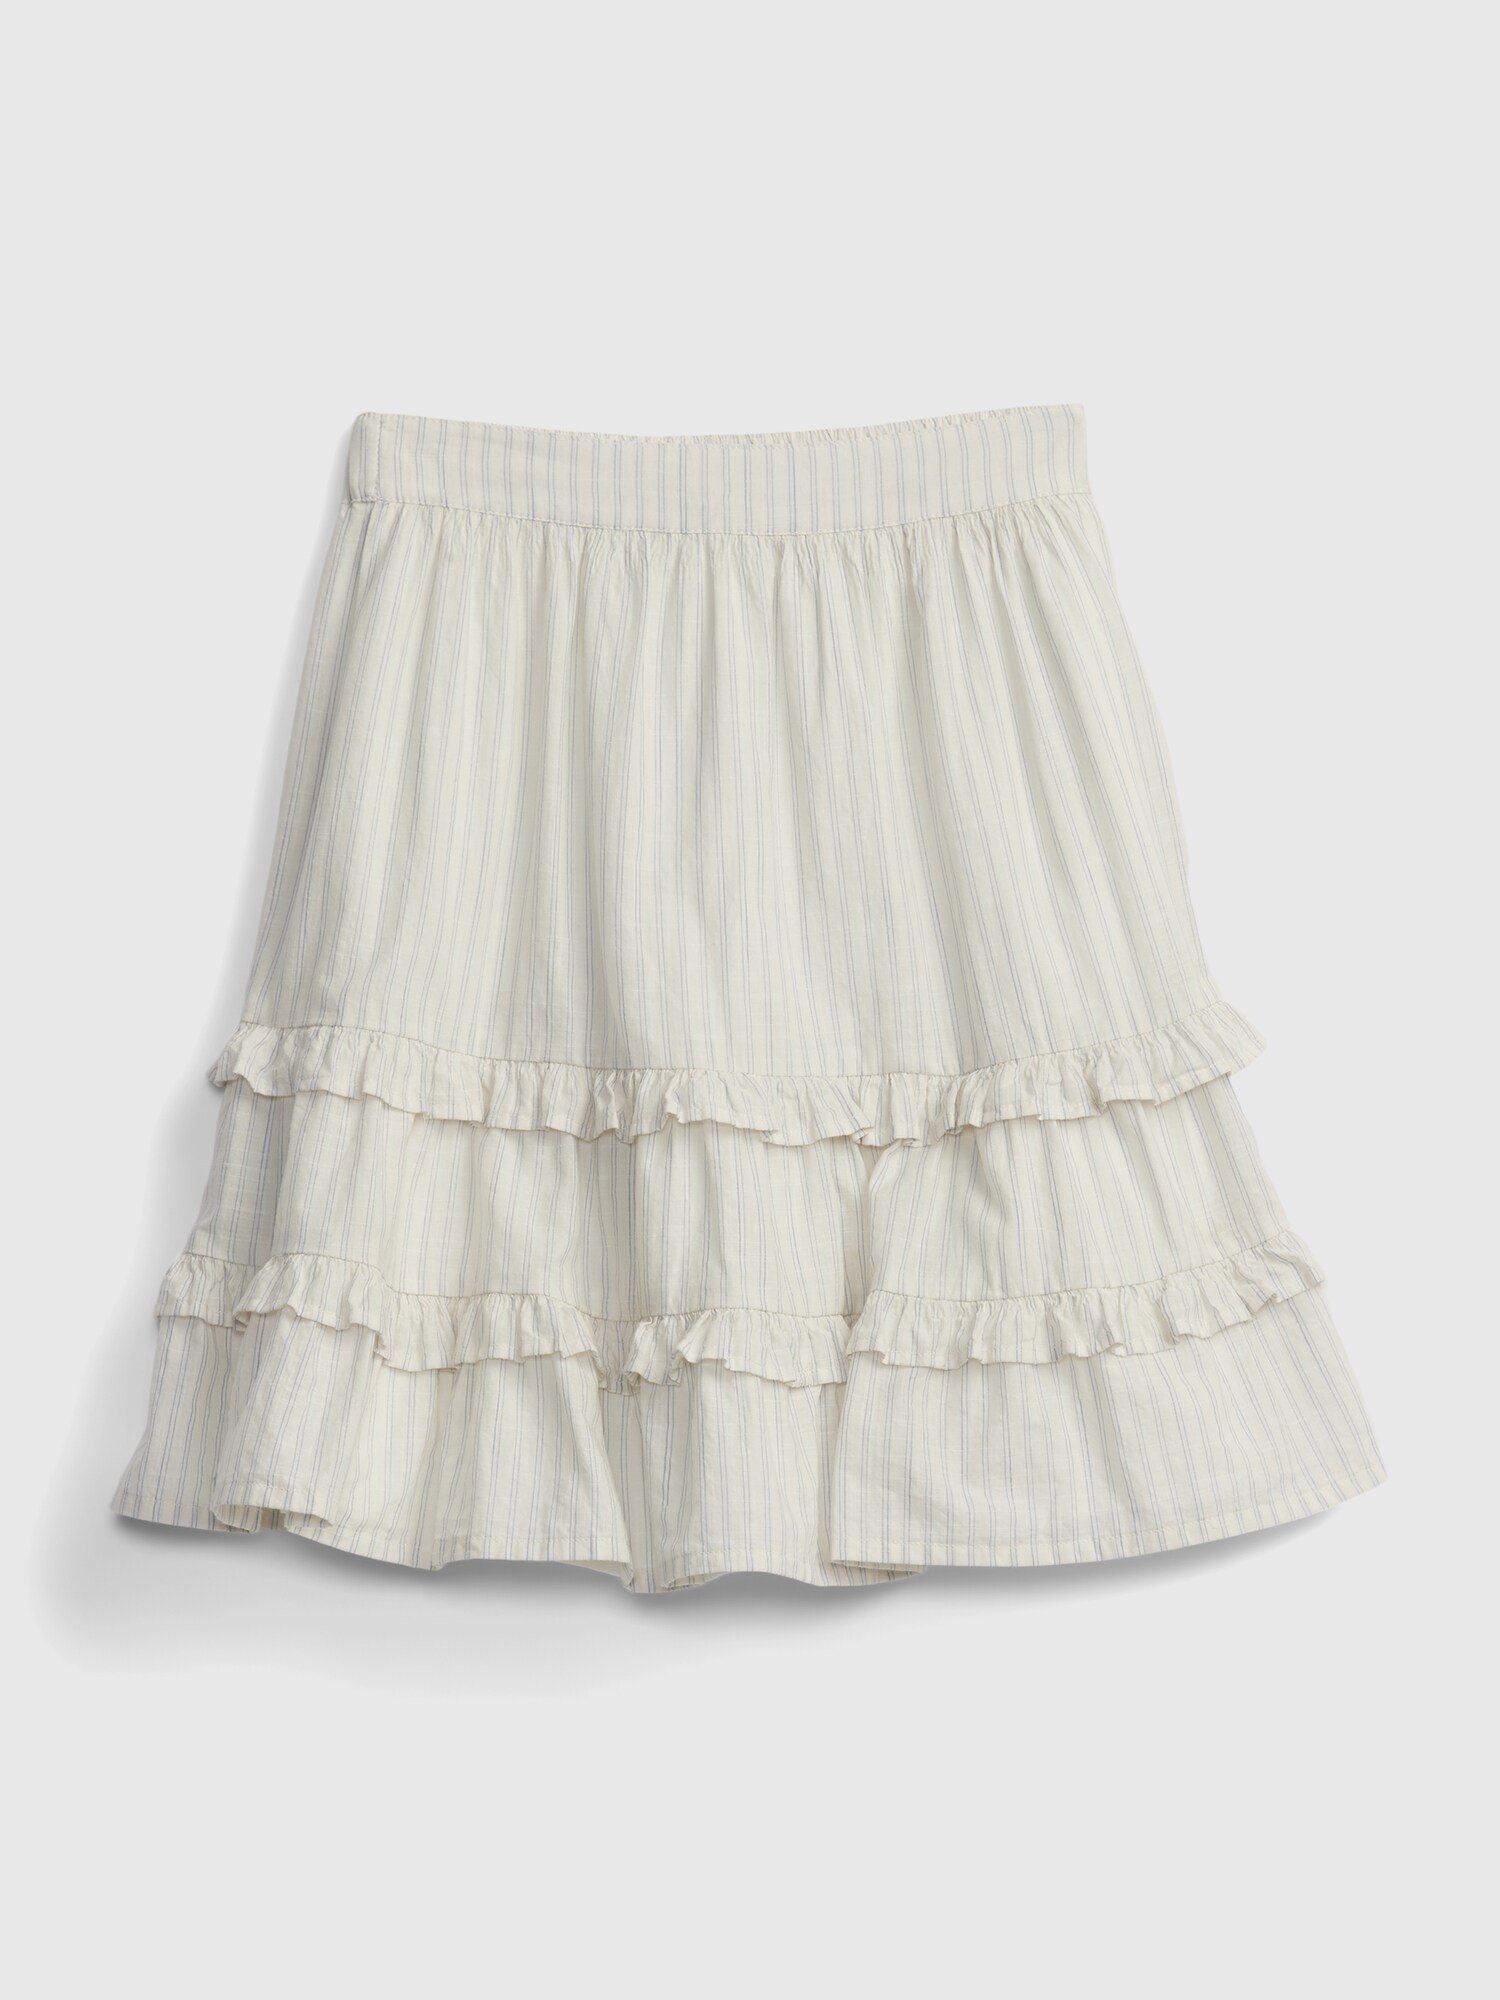 Fotografie Bílá holčičí dětská sukně stripe skirt